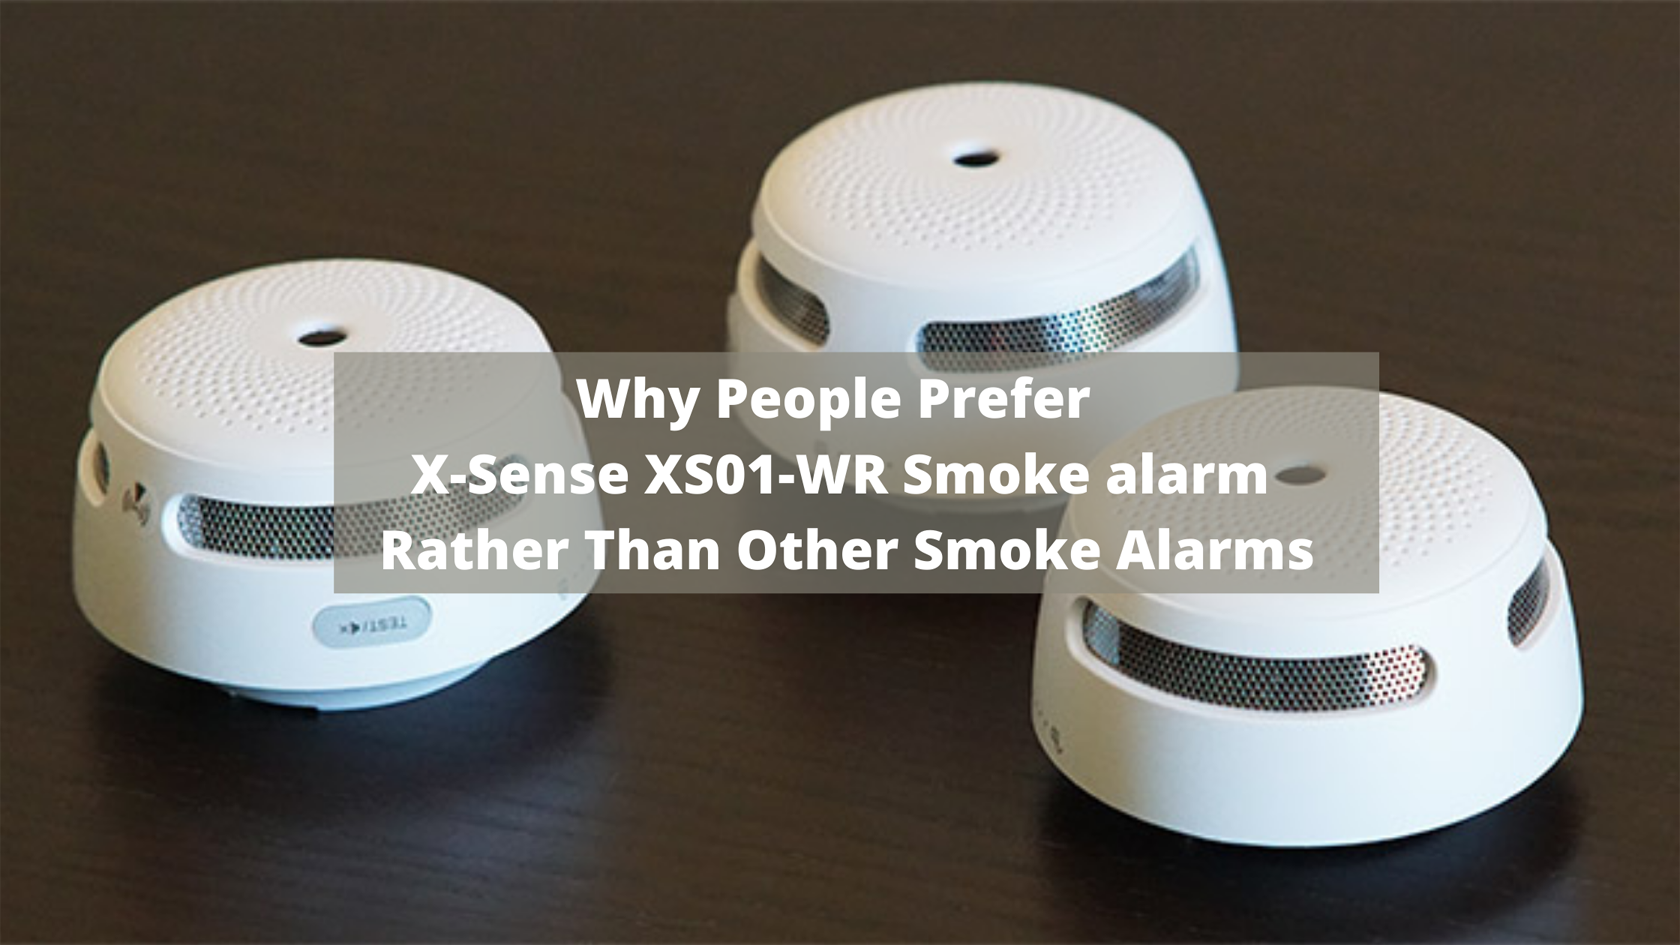 Why People Prefer X-Sense XS01-WR Smoke Alarm